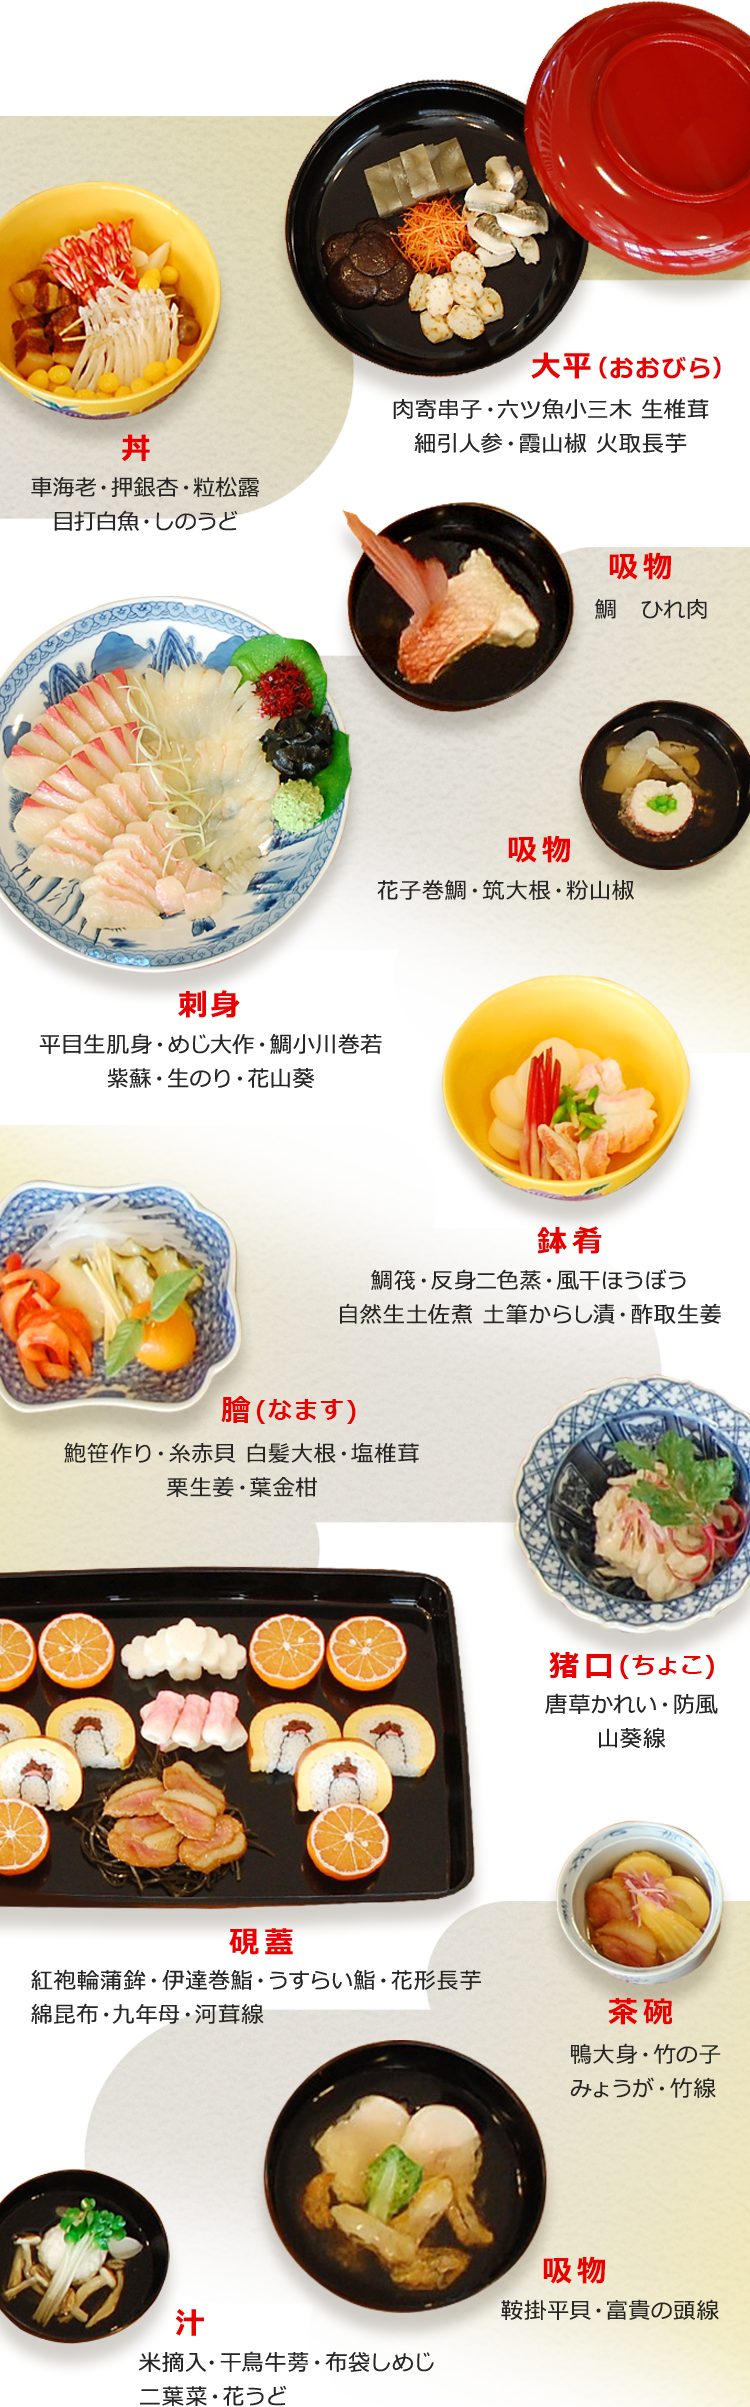 洋食のルーツ 西洋料理の事始め 洋食ルーツストーリー Plenus 米食文化研究所